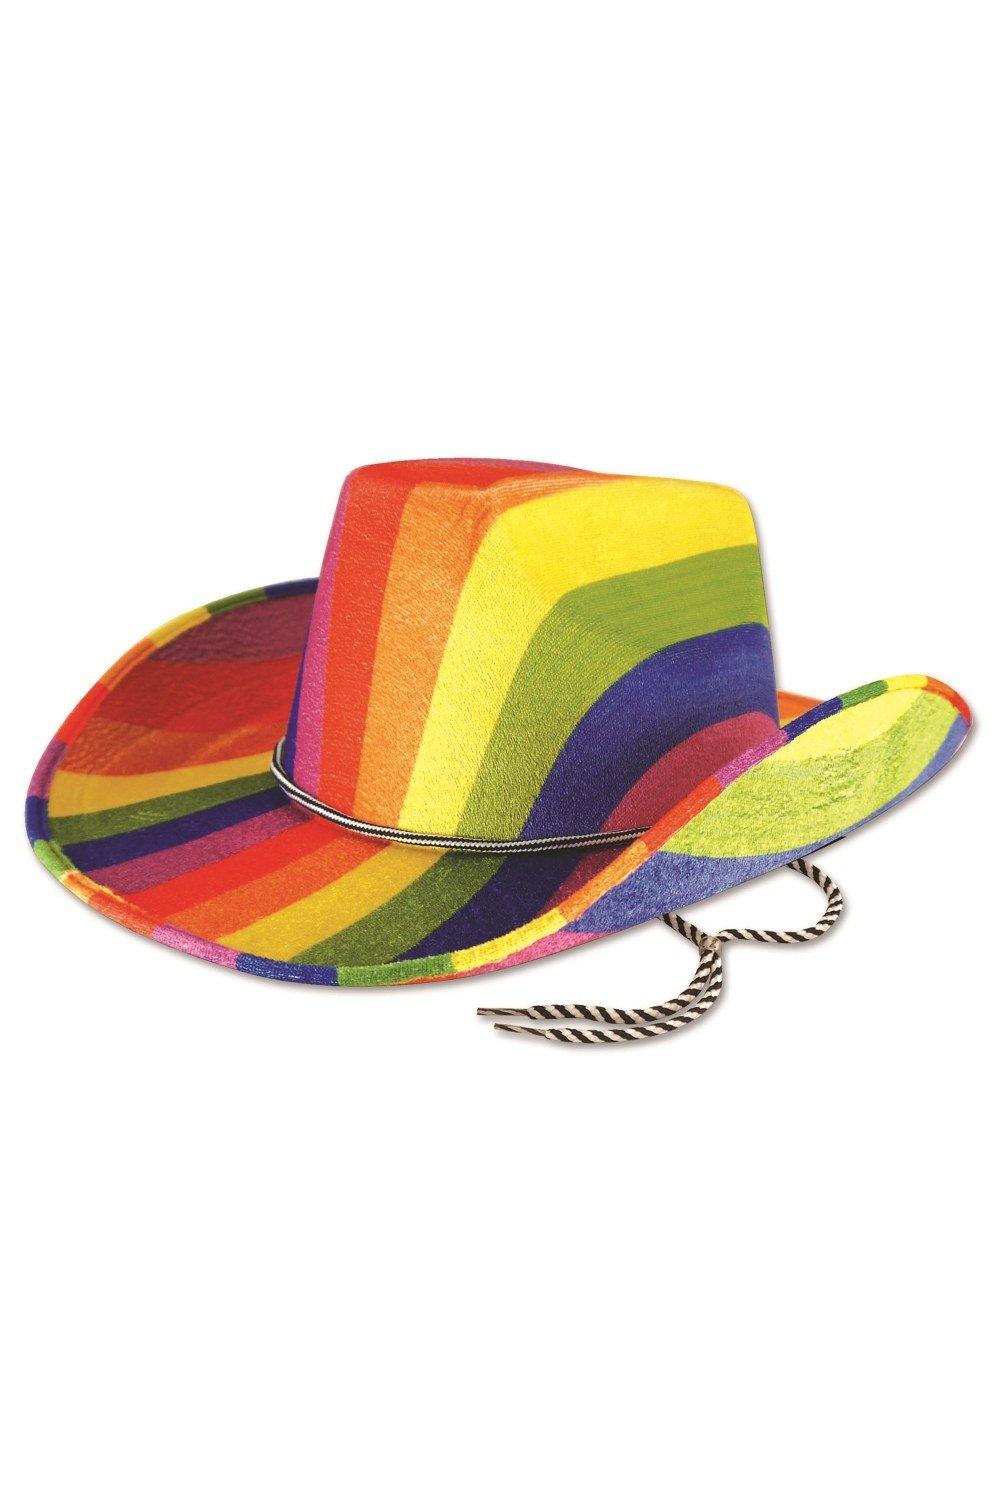 Радужная ковбойская шляпа Bristol Novelty, мультиколор ковбойская шляпа с перьями шляпа невесты ковбойская шляпа для девичника искусственная шляпа для невесты ковбойская шляпа для дискотеки